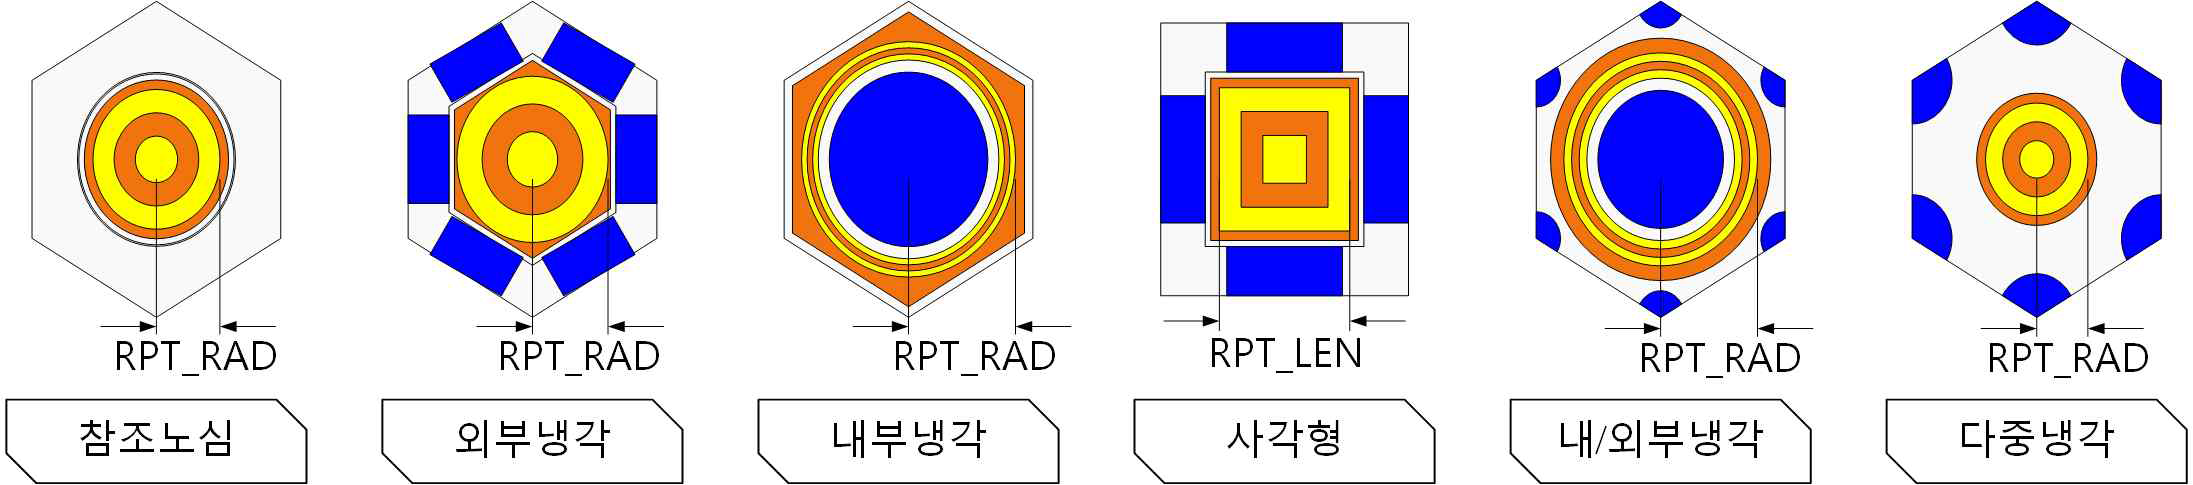 RPT 모델 단위 셀 단면도